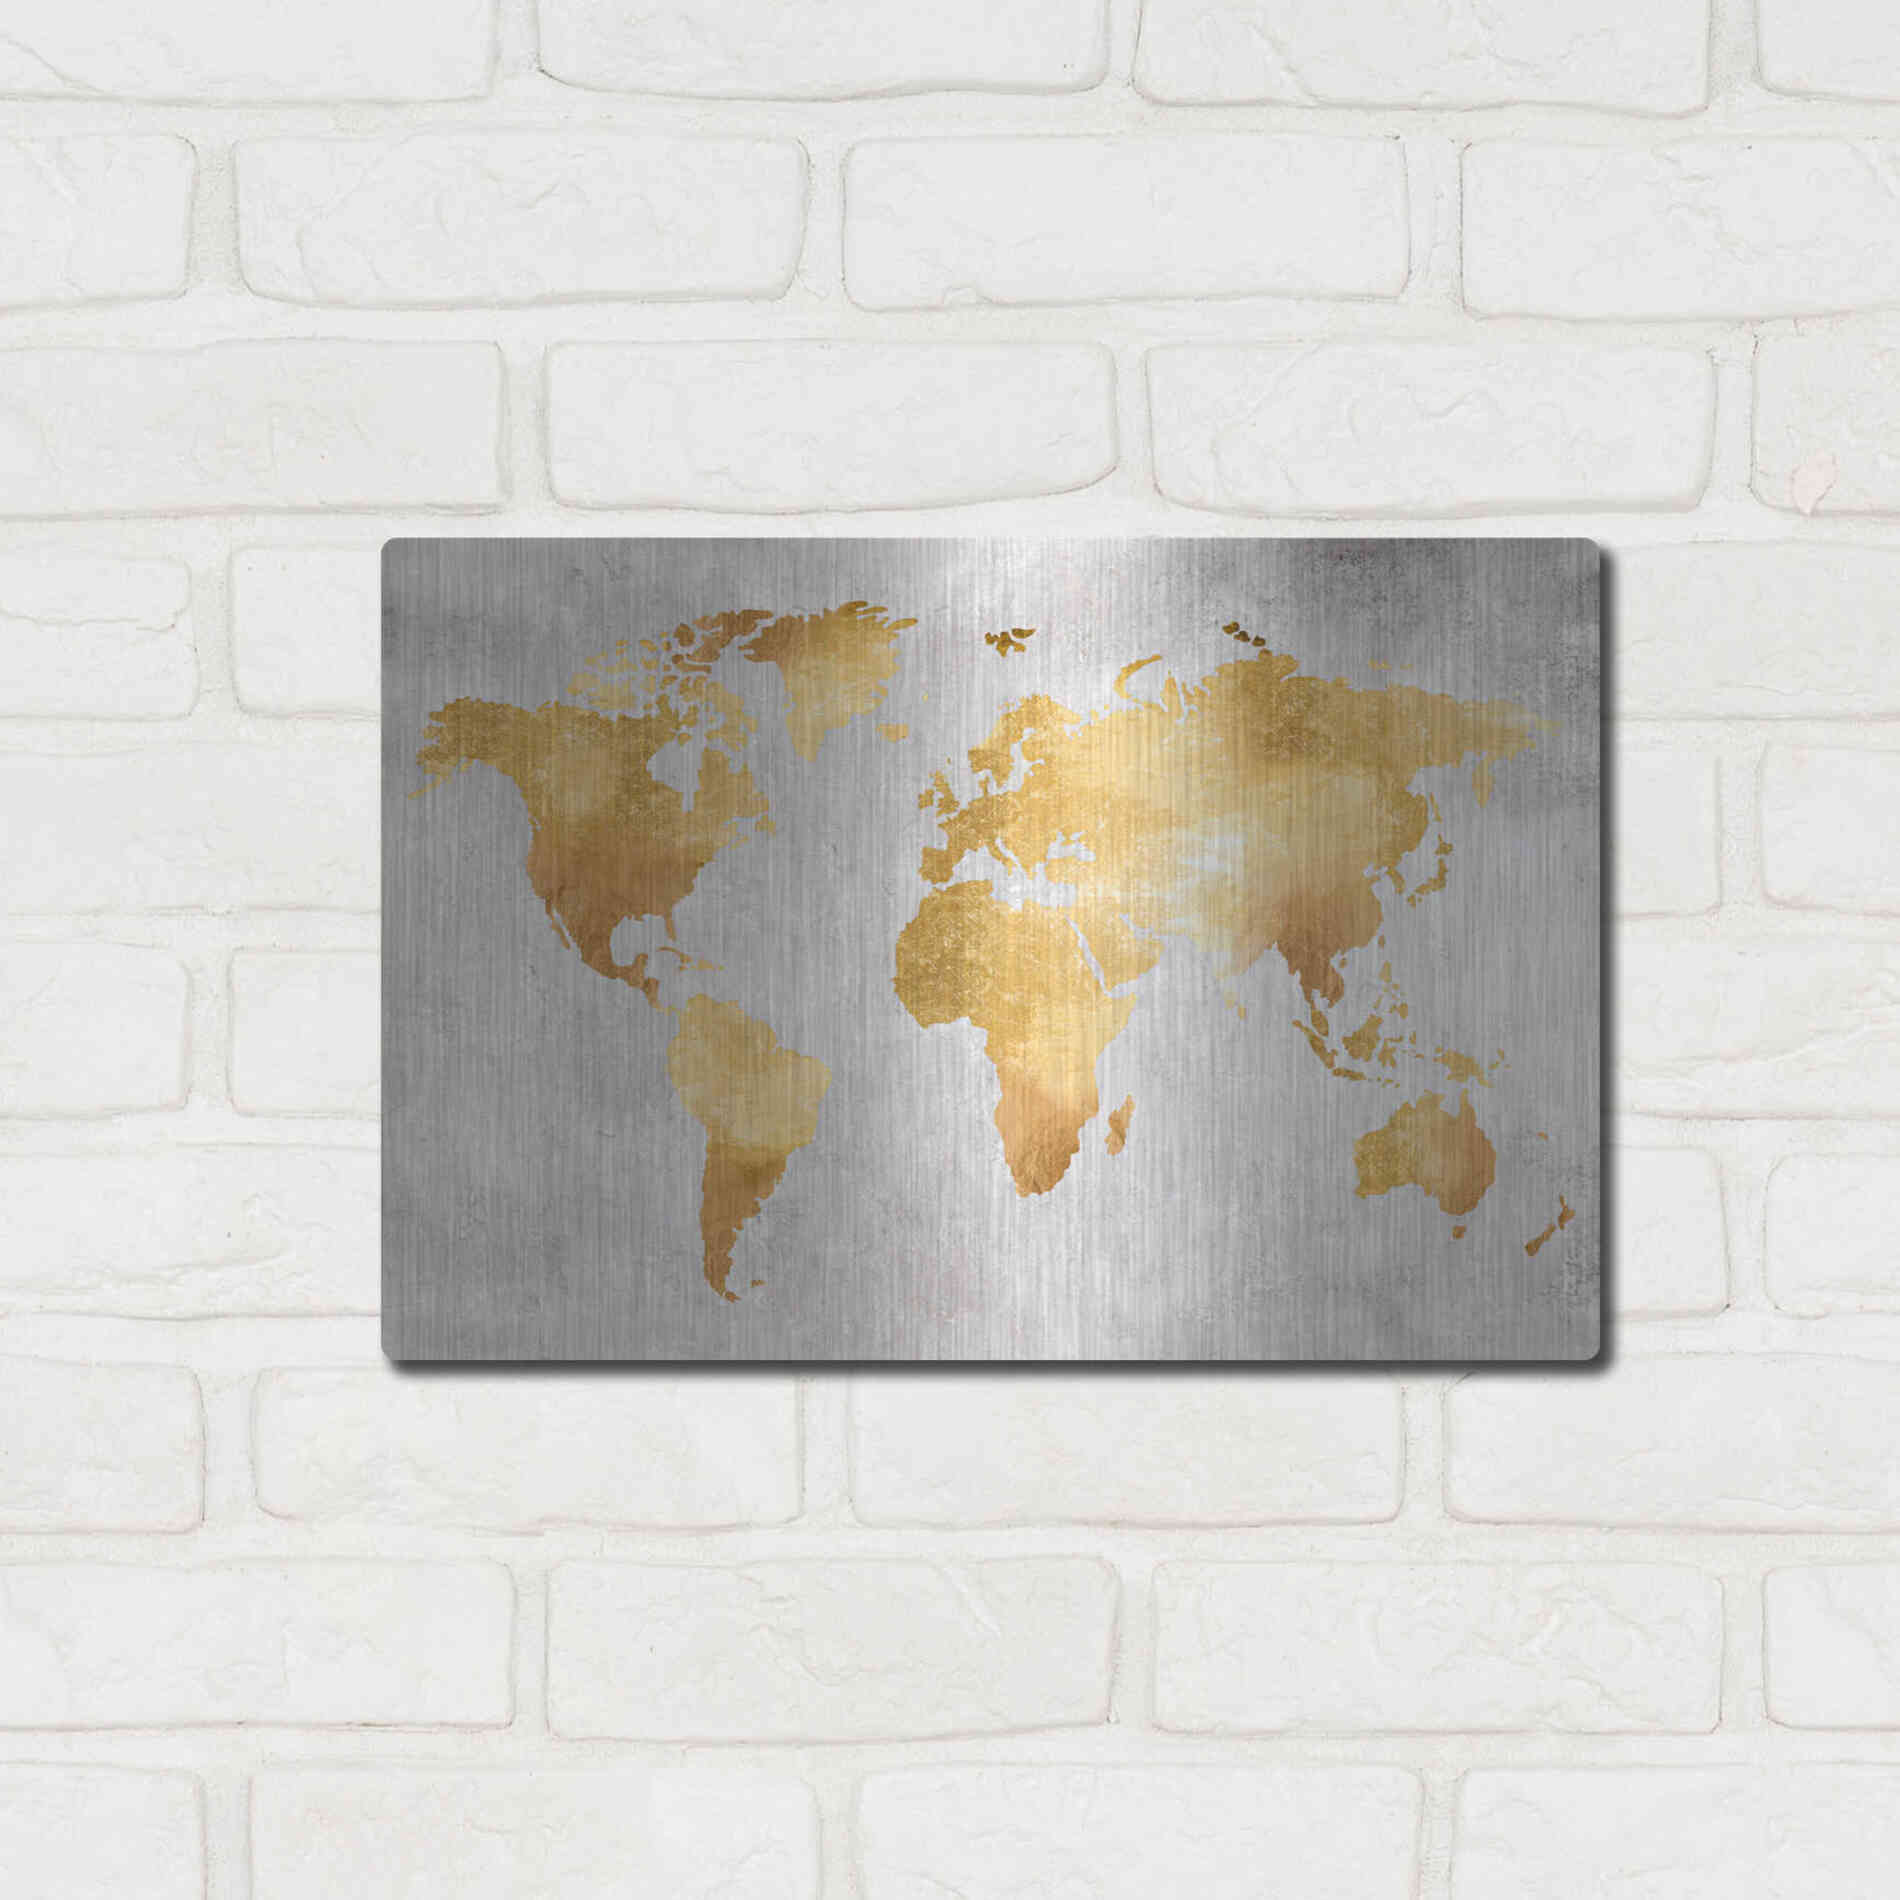 Luxe Metal Art 'Gold World' by Design Fabrikken, Metal Wall Art,16x12